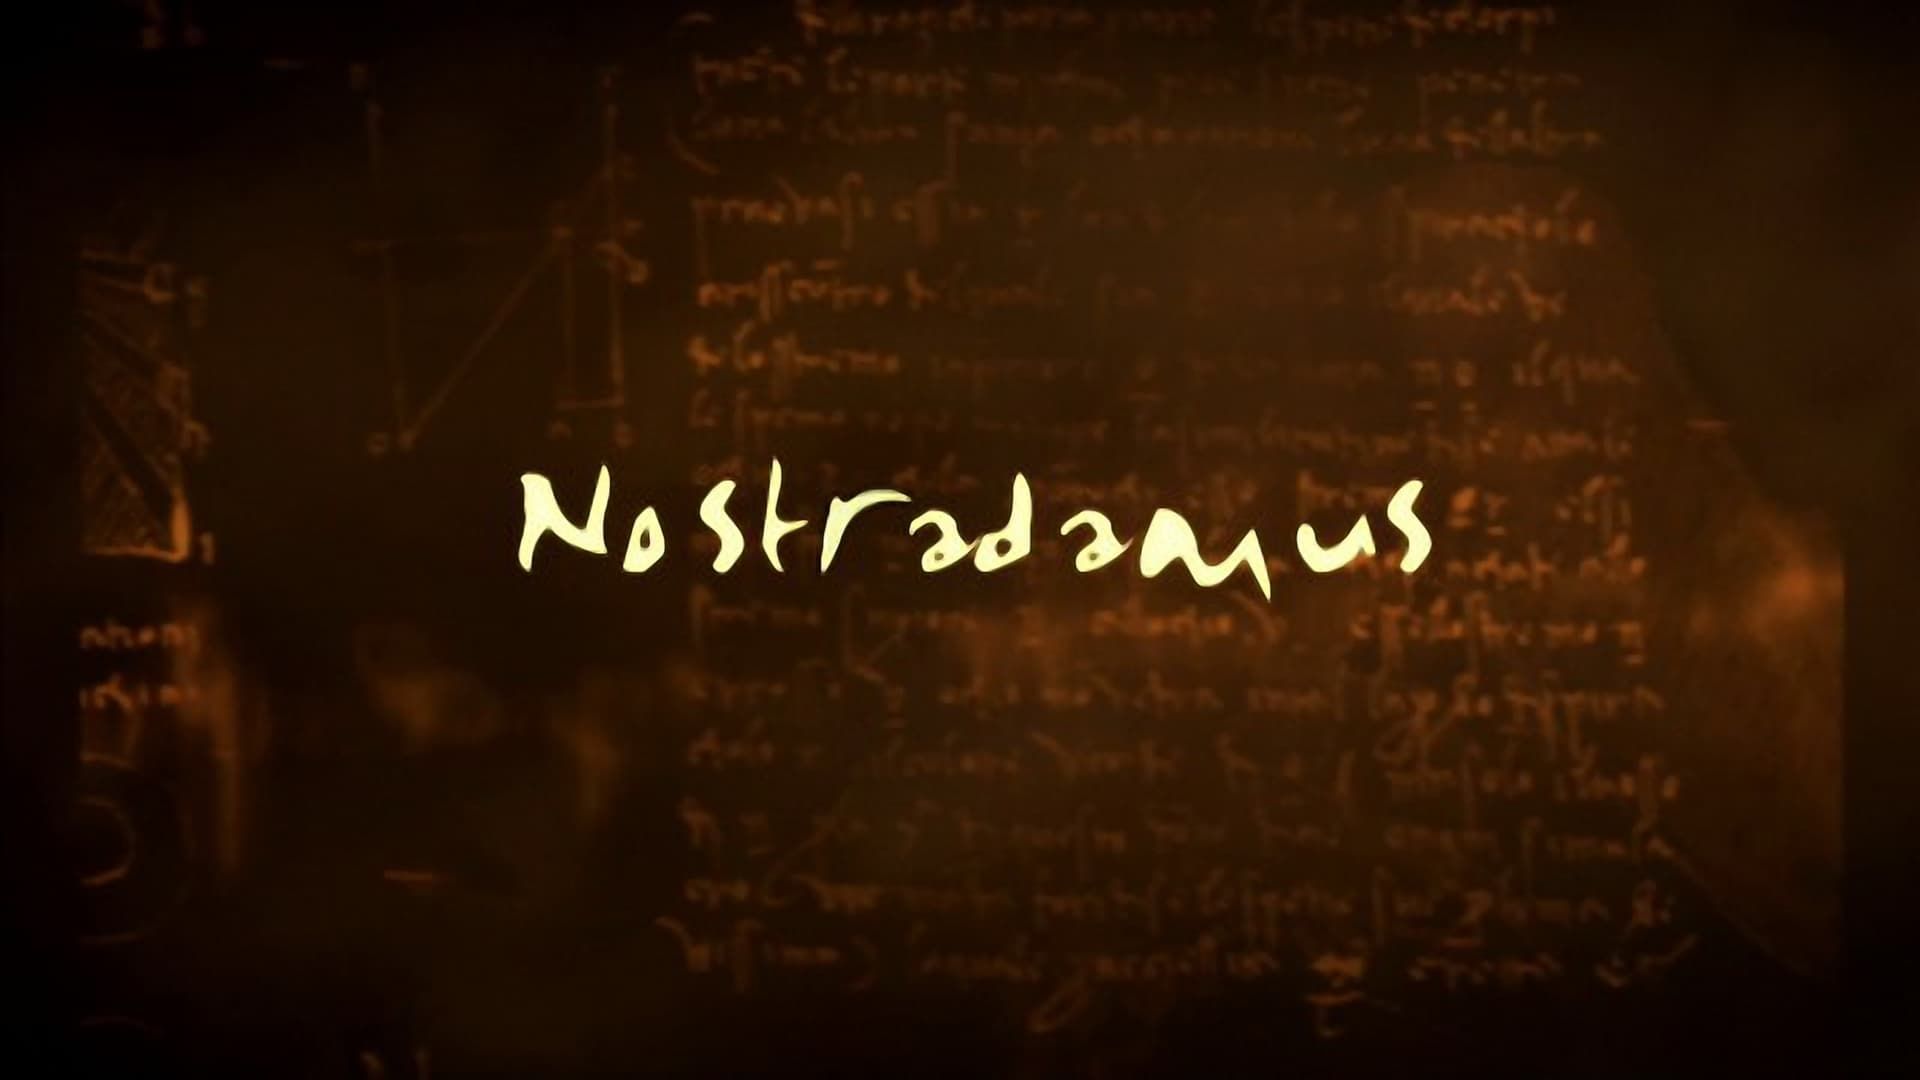 Nostradamus background